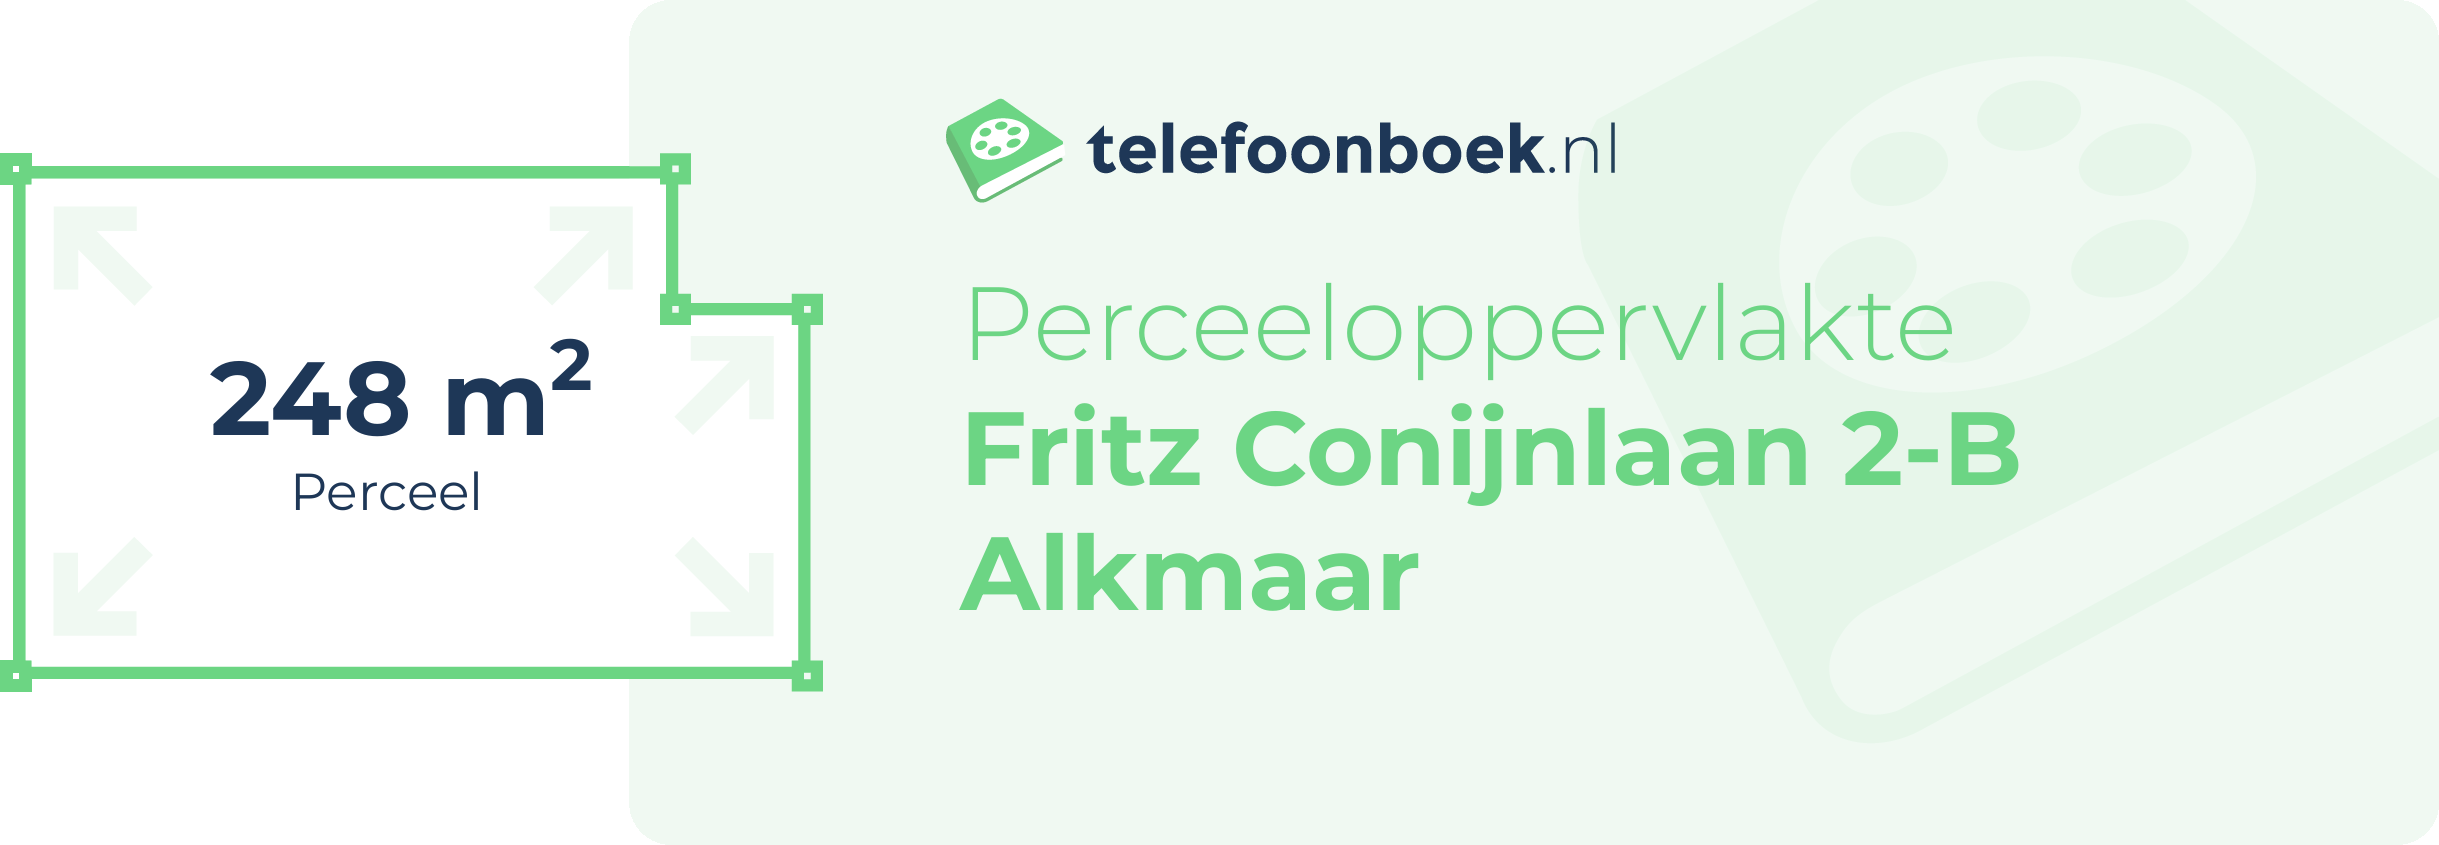 Perceeloppervlakte Fritz Conijnlaan 2-B Alkmaar